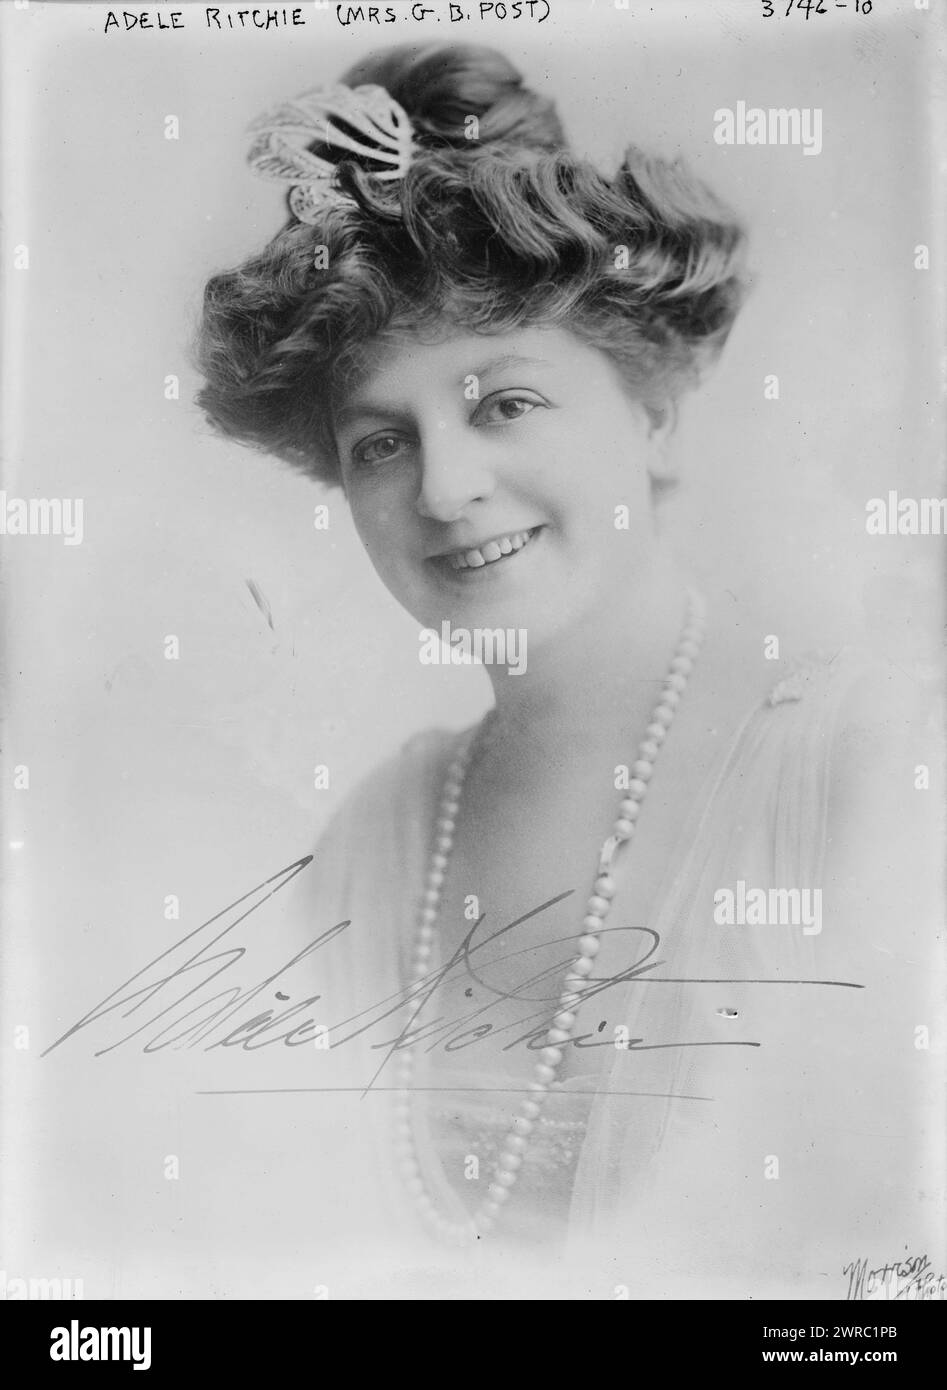 Adele Ritchie (Mrs. G. B. Post), fotografía muestra la comedia musical y la actriz de vodeville Adele Ritchie (1874-1930) quien anunció su compromiso con Guy Bates Post el 1 de febrero de 1916., entre aprox. 1915 y ca. 1920, Negativos de vidrio, 1 negativo: Vidrio Foto de stock